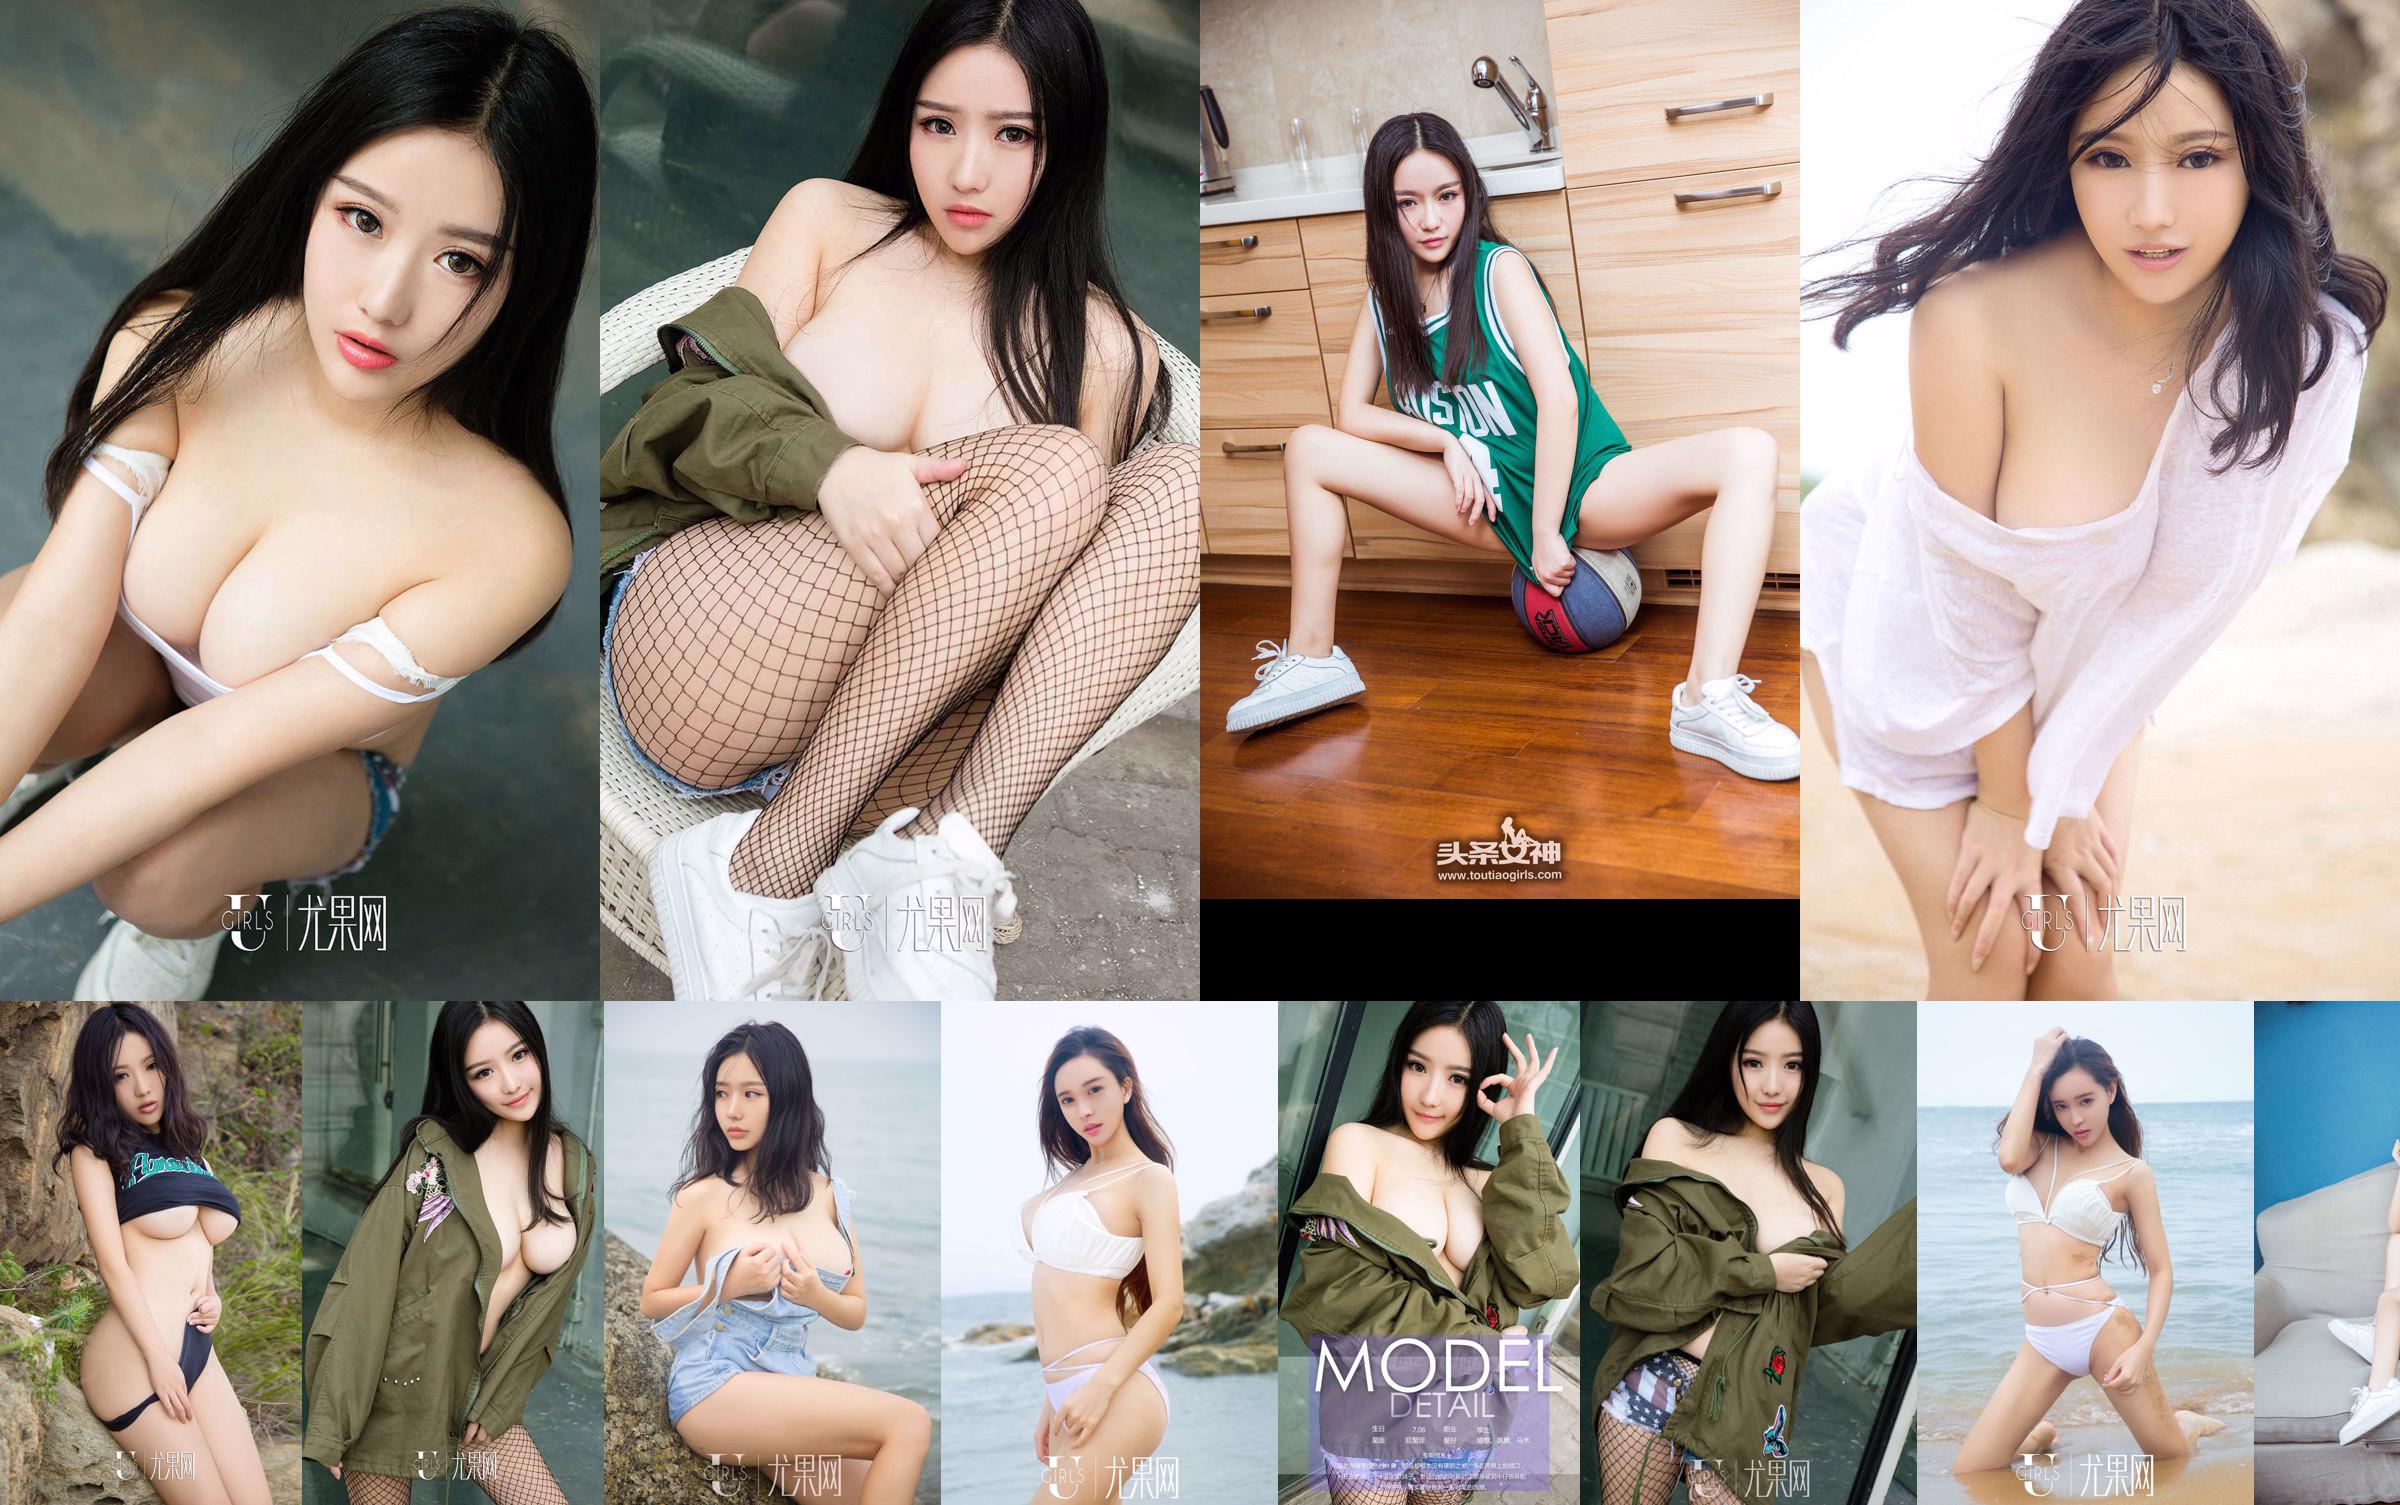 Ni Yeteng "Cô gái mềm mại trong quân phục" [Youguoquan] No.714 No.073397 Trang 4